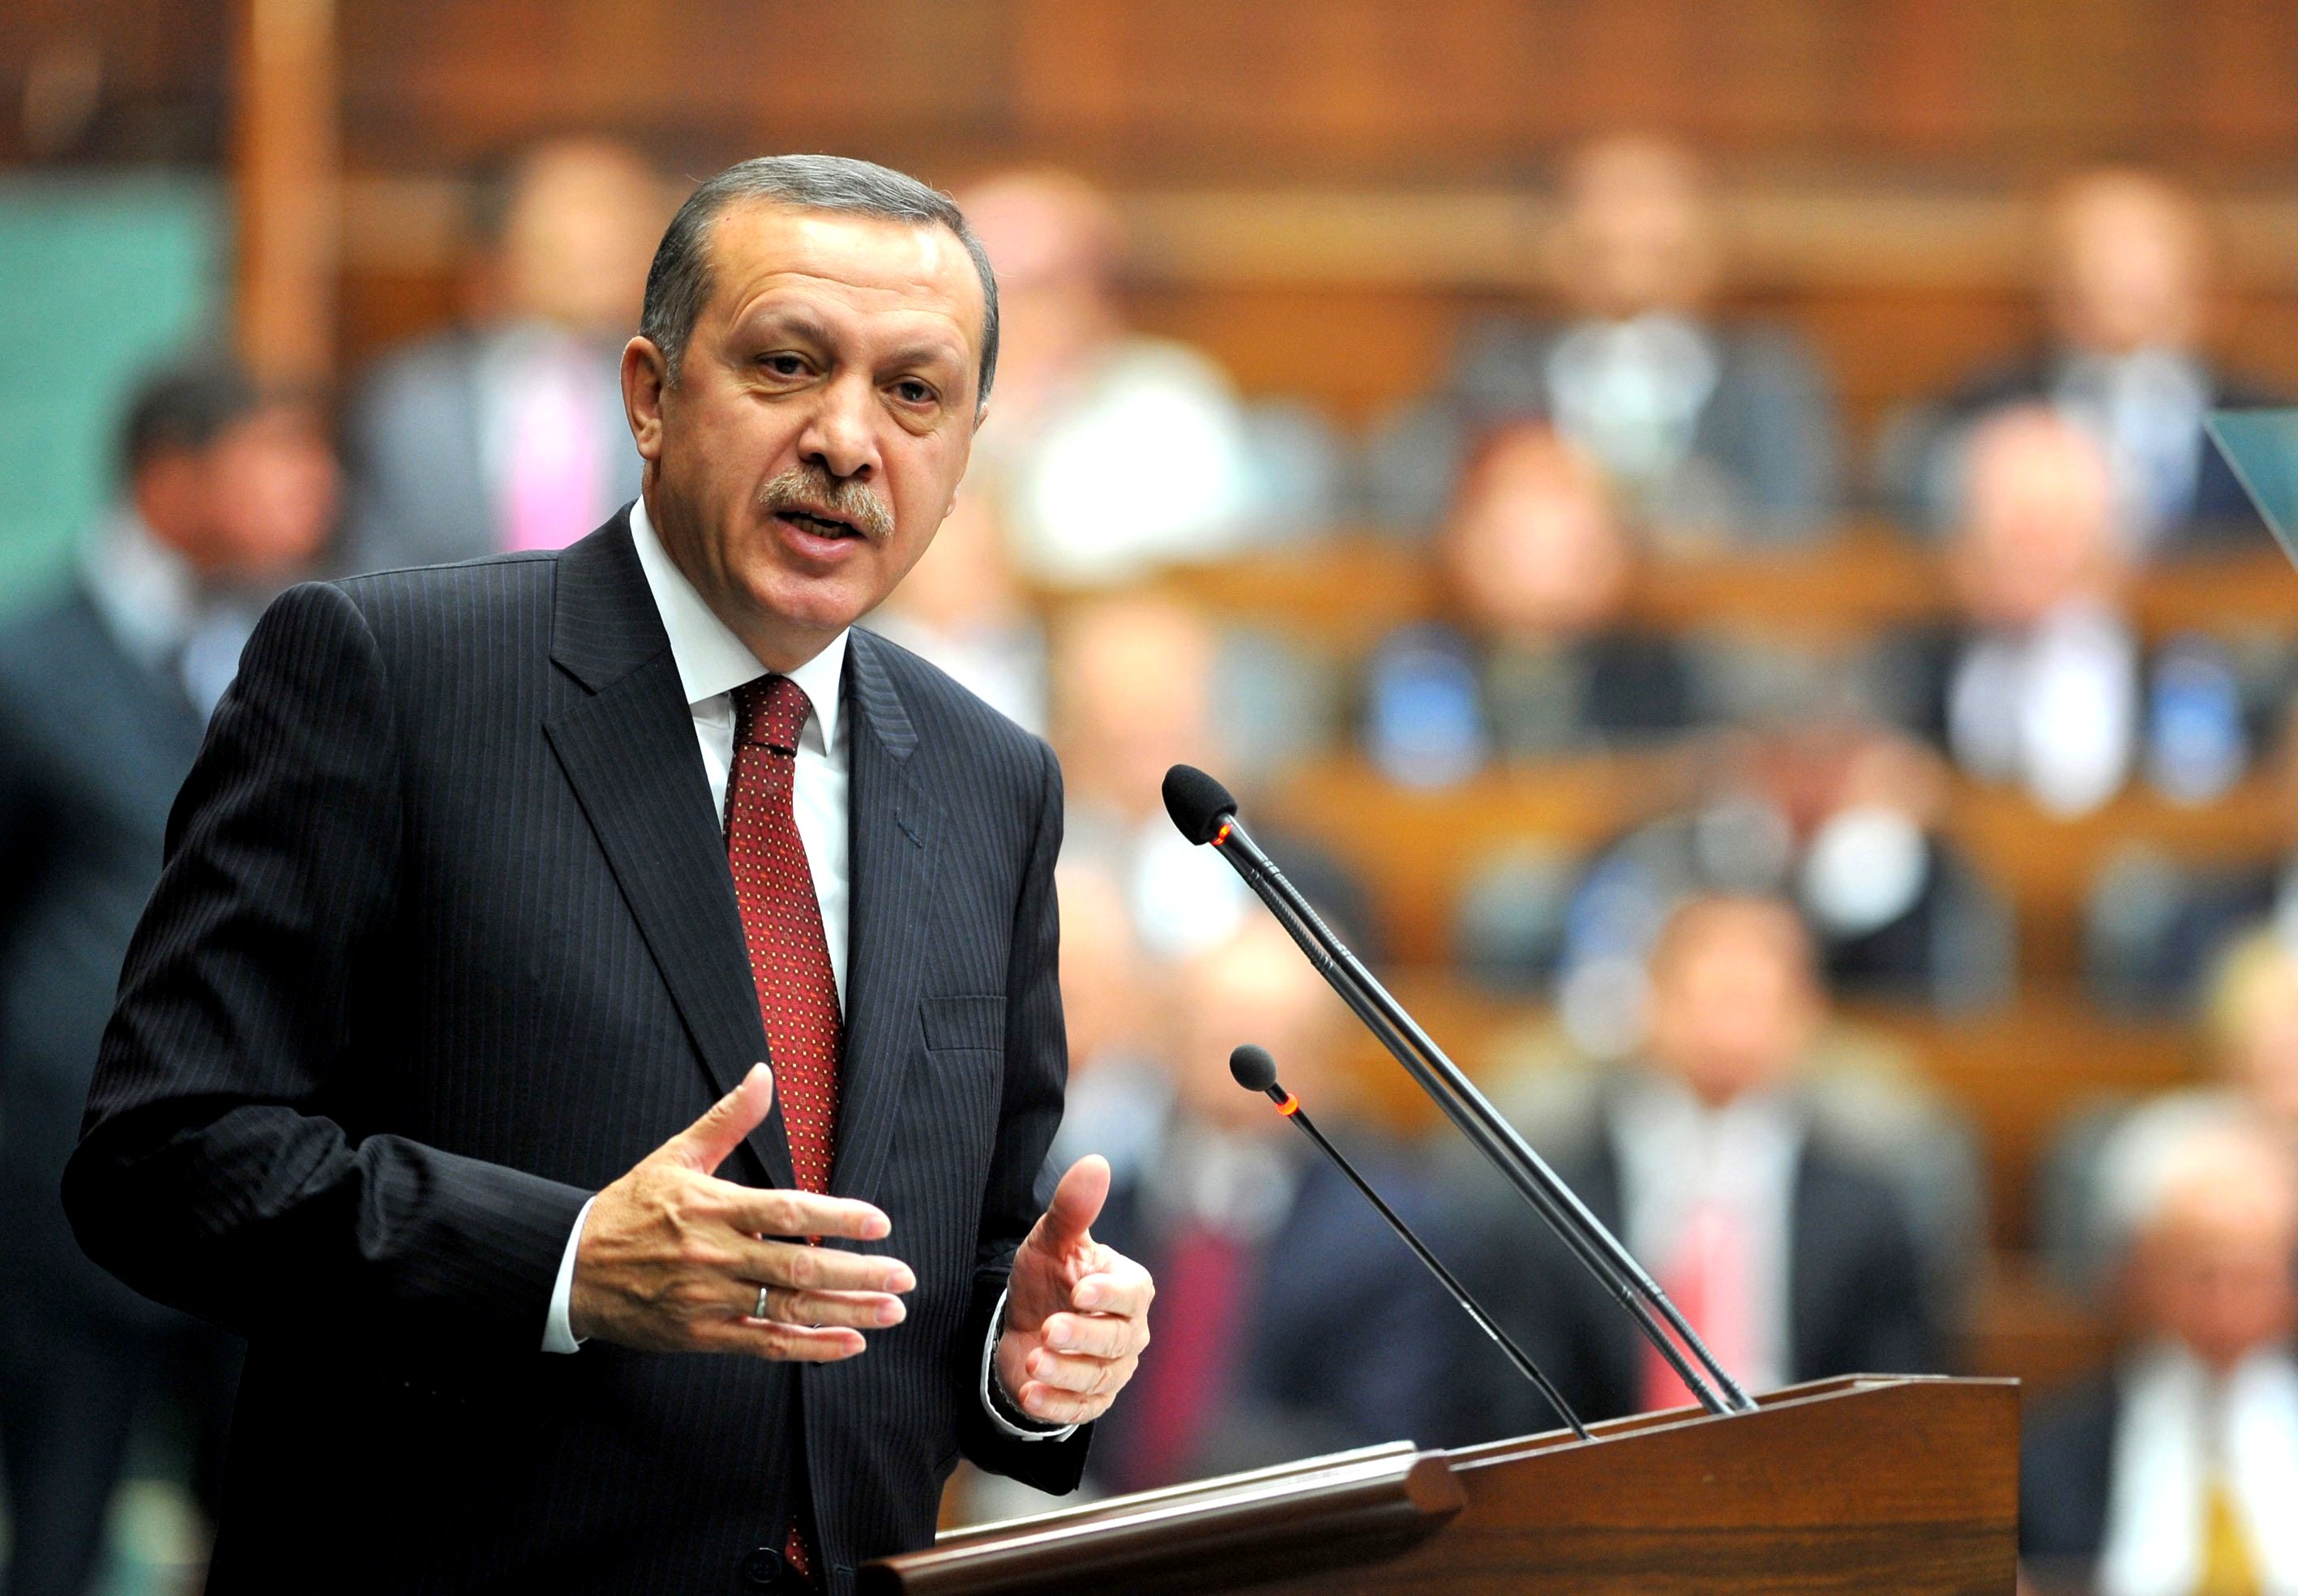 اردوغان يتهم أوروبا بـ"تهميش الديموقراطية"